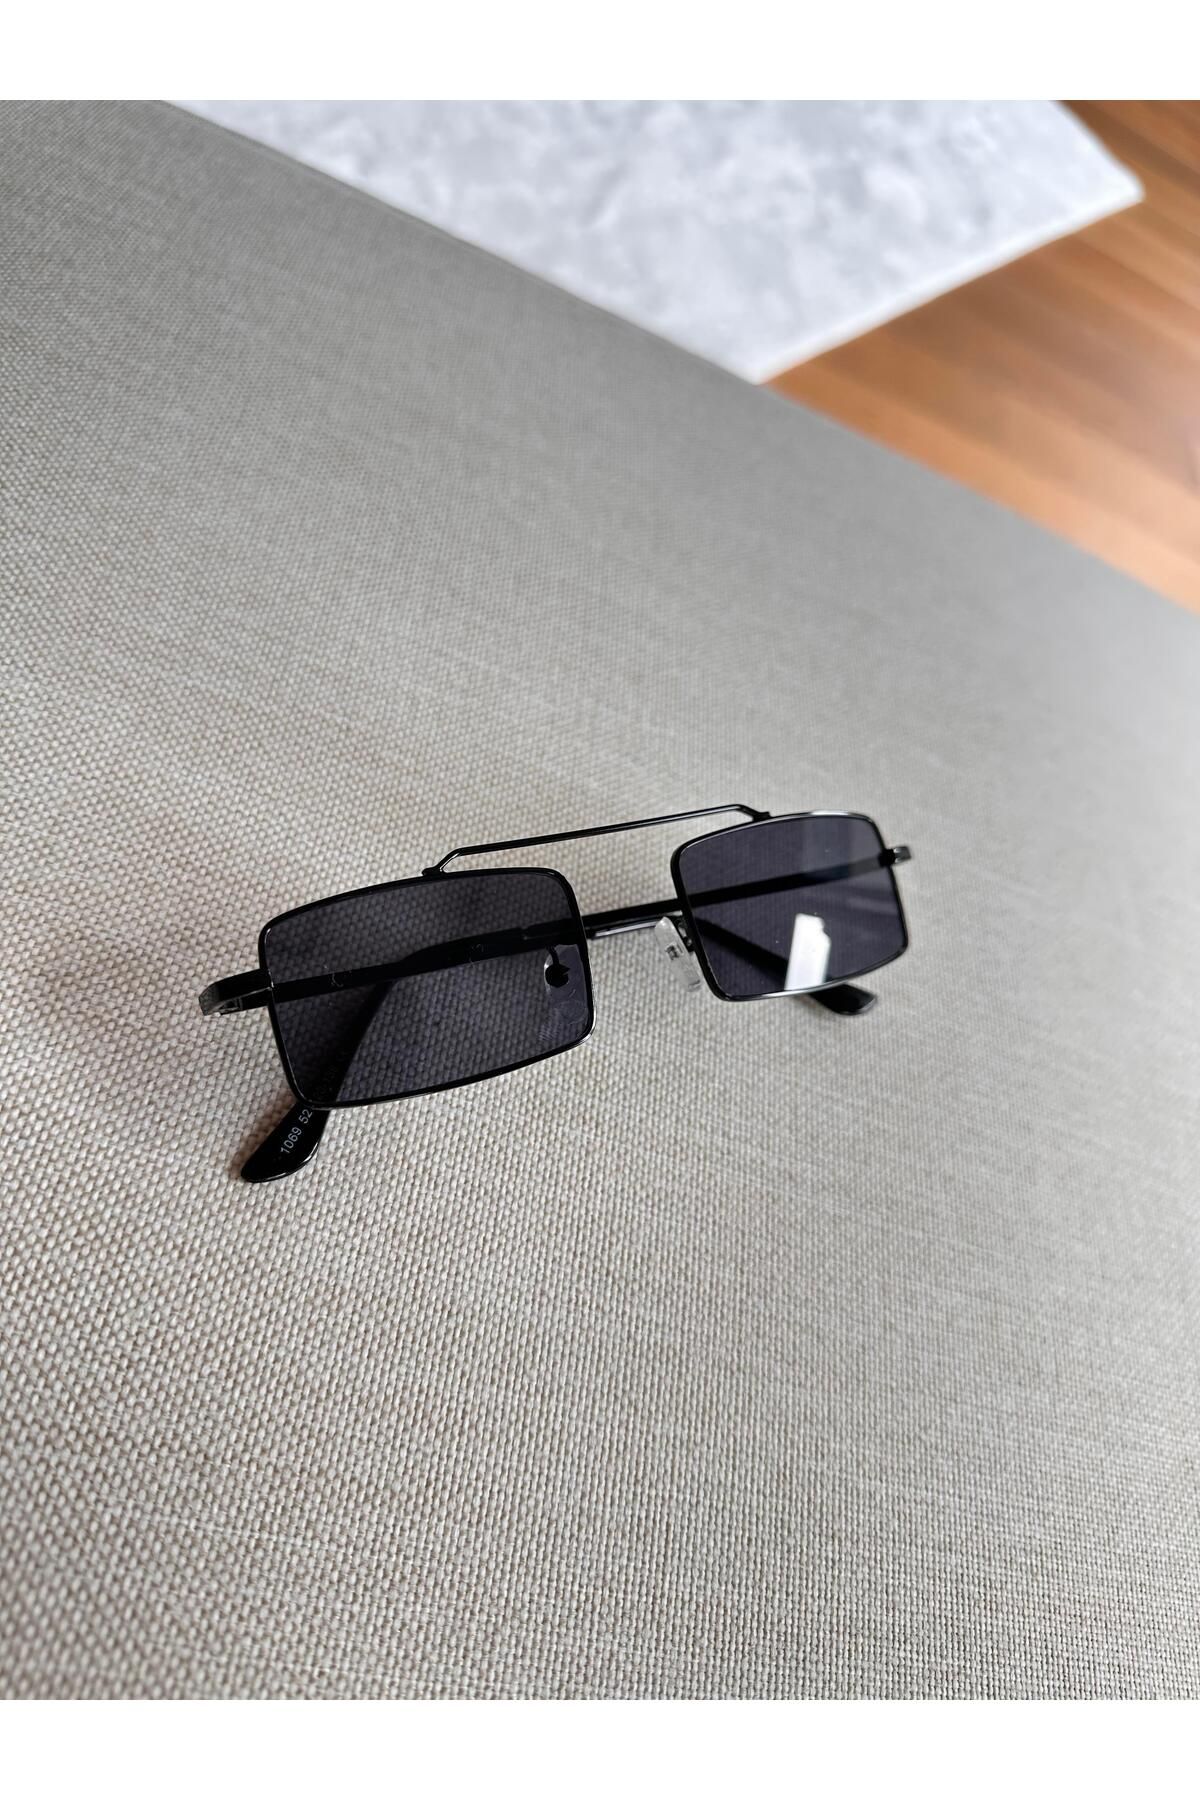 Maldia Shop Unisex Model Kemerli Siyah Güneş Gözlüğü